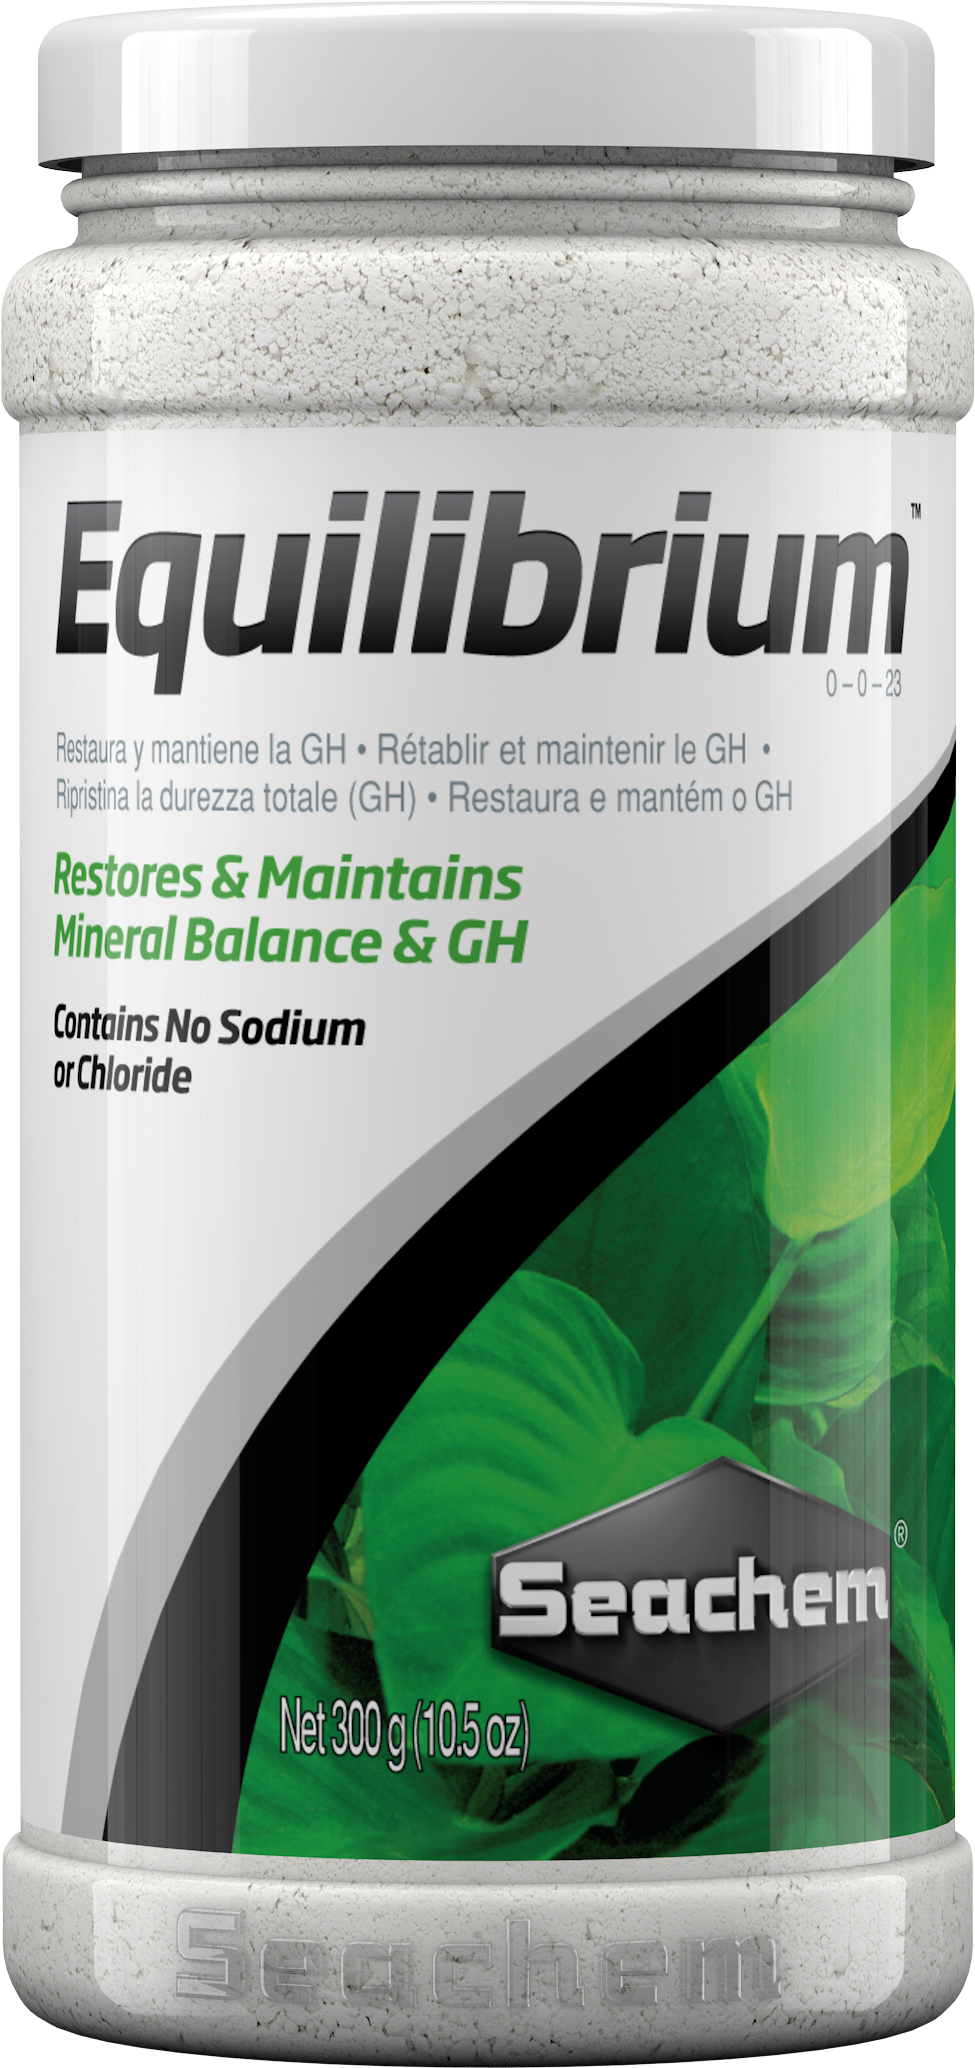 Equilibrium-300g